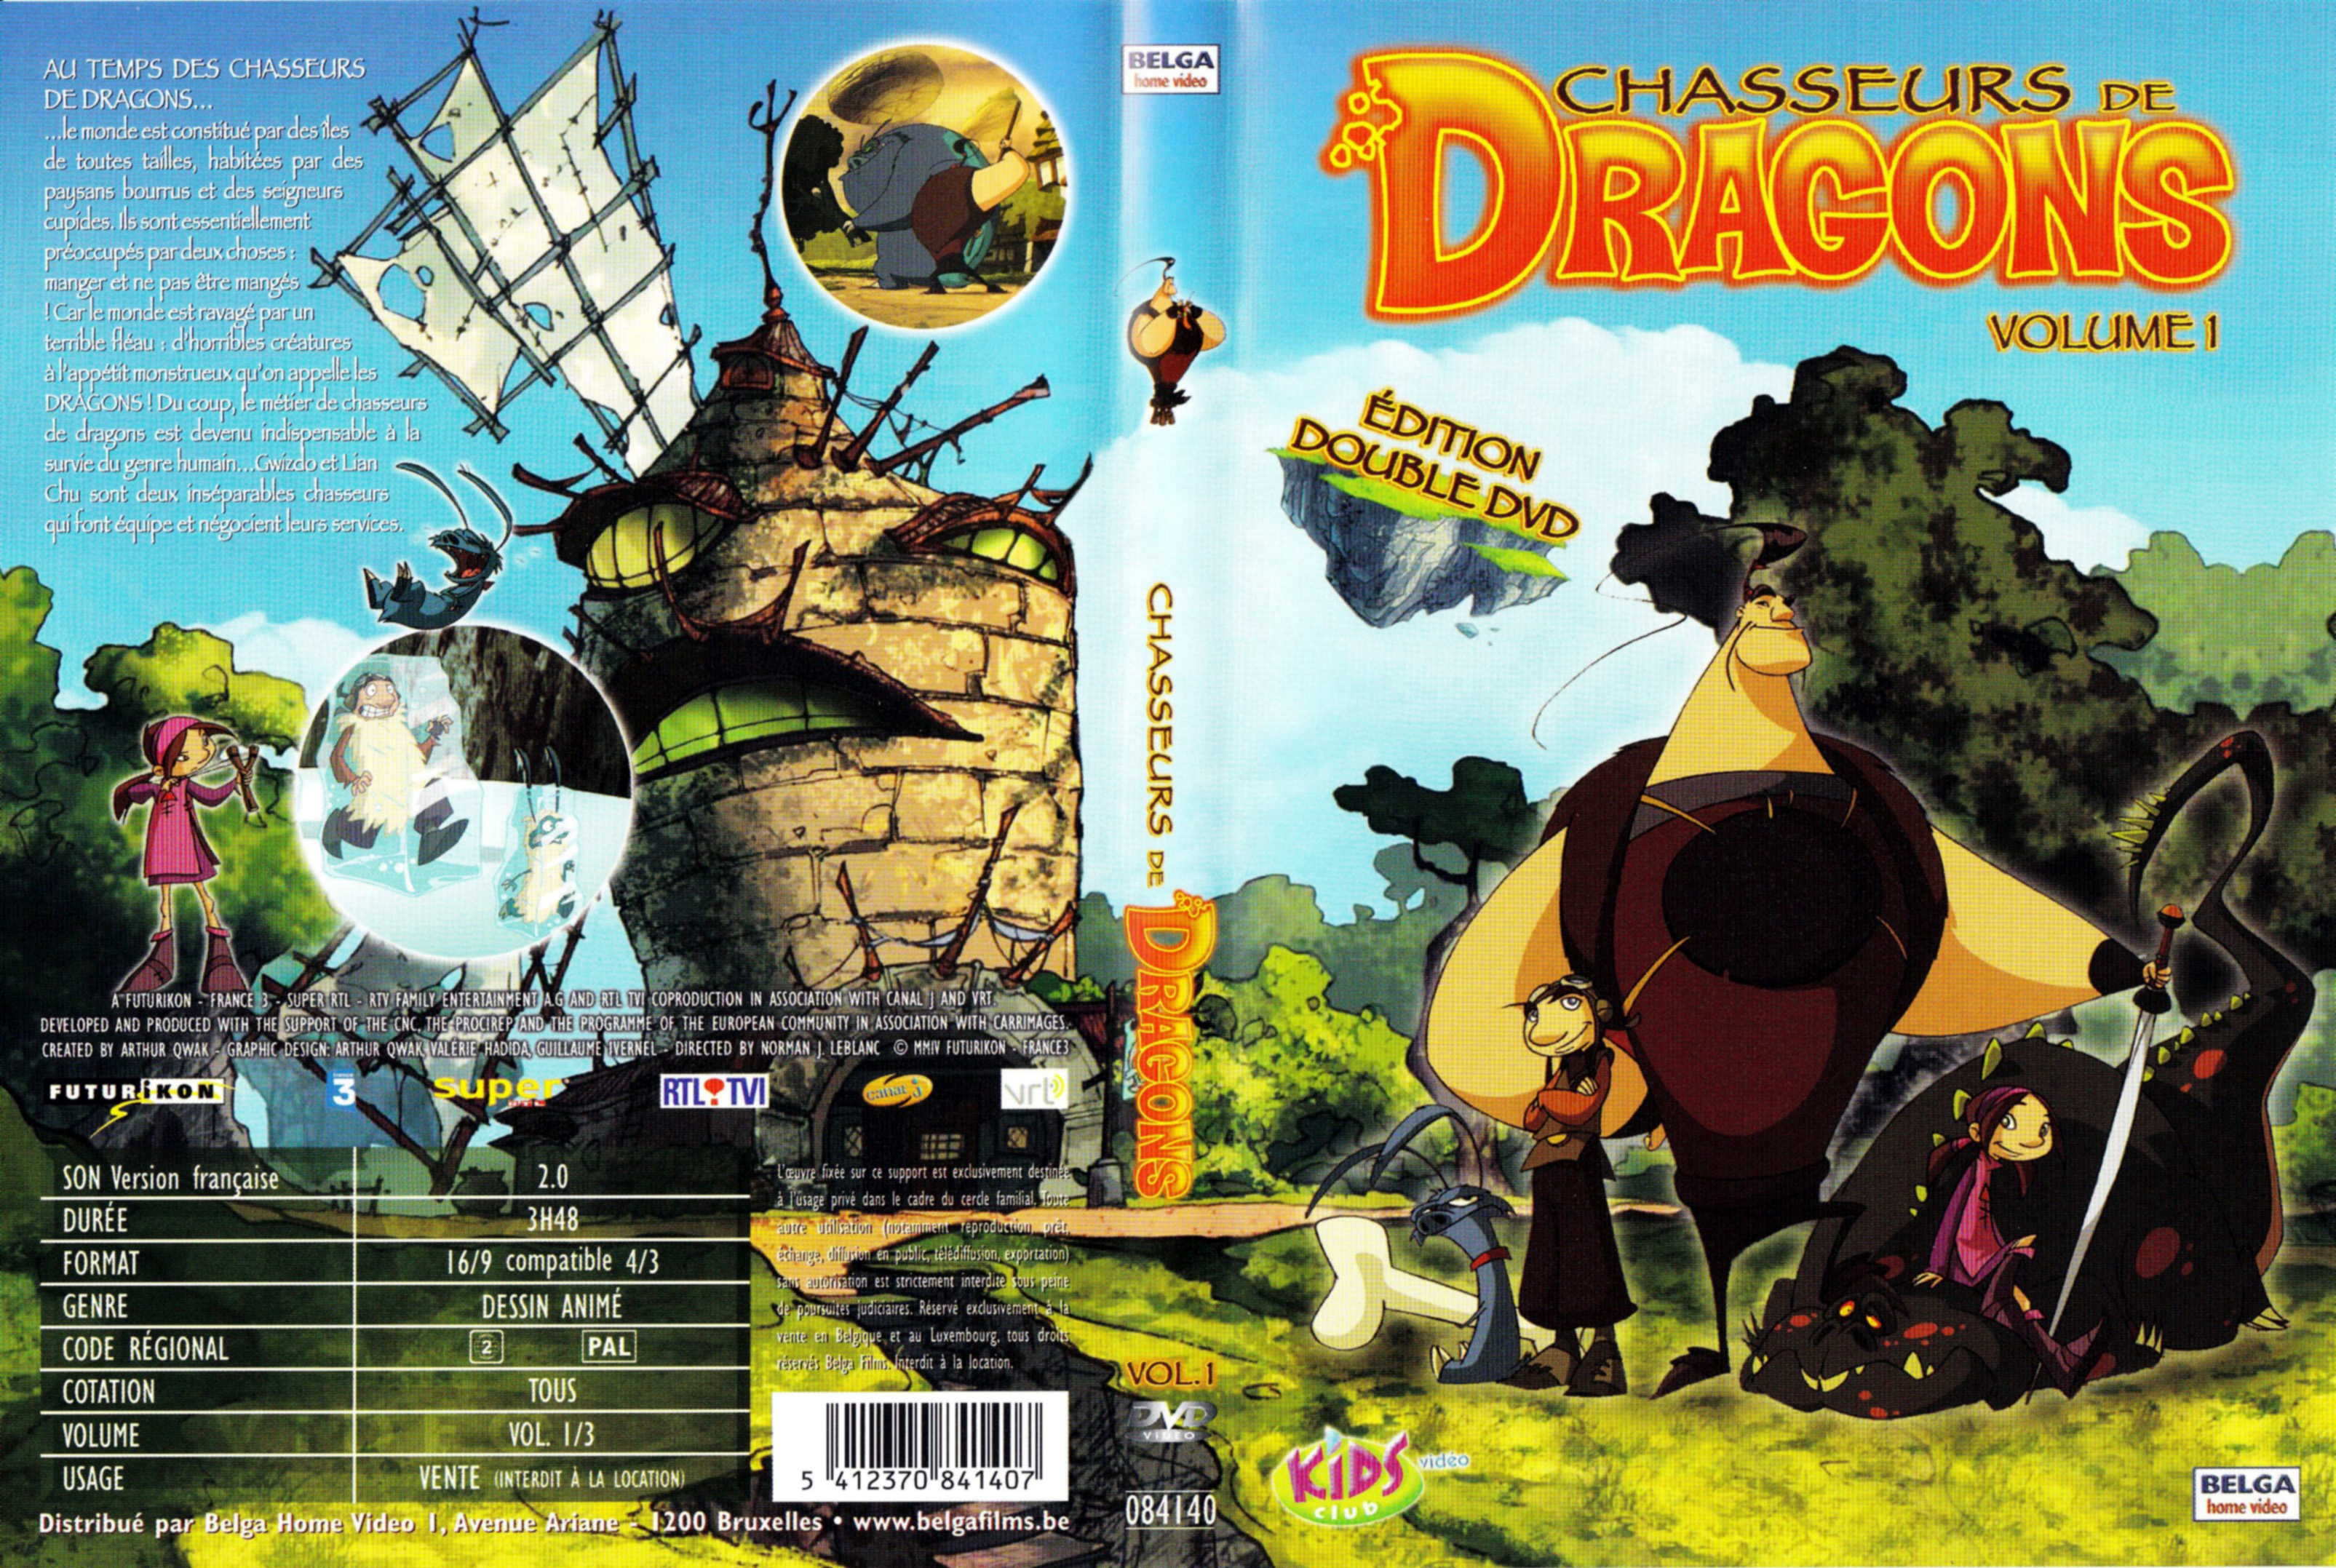 Jaquette DVD Chasseurs de dragons vol 1